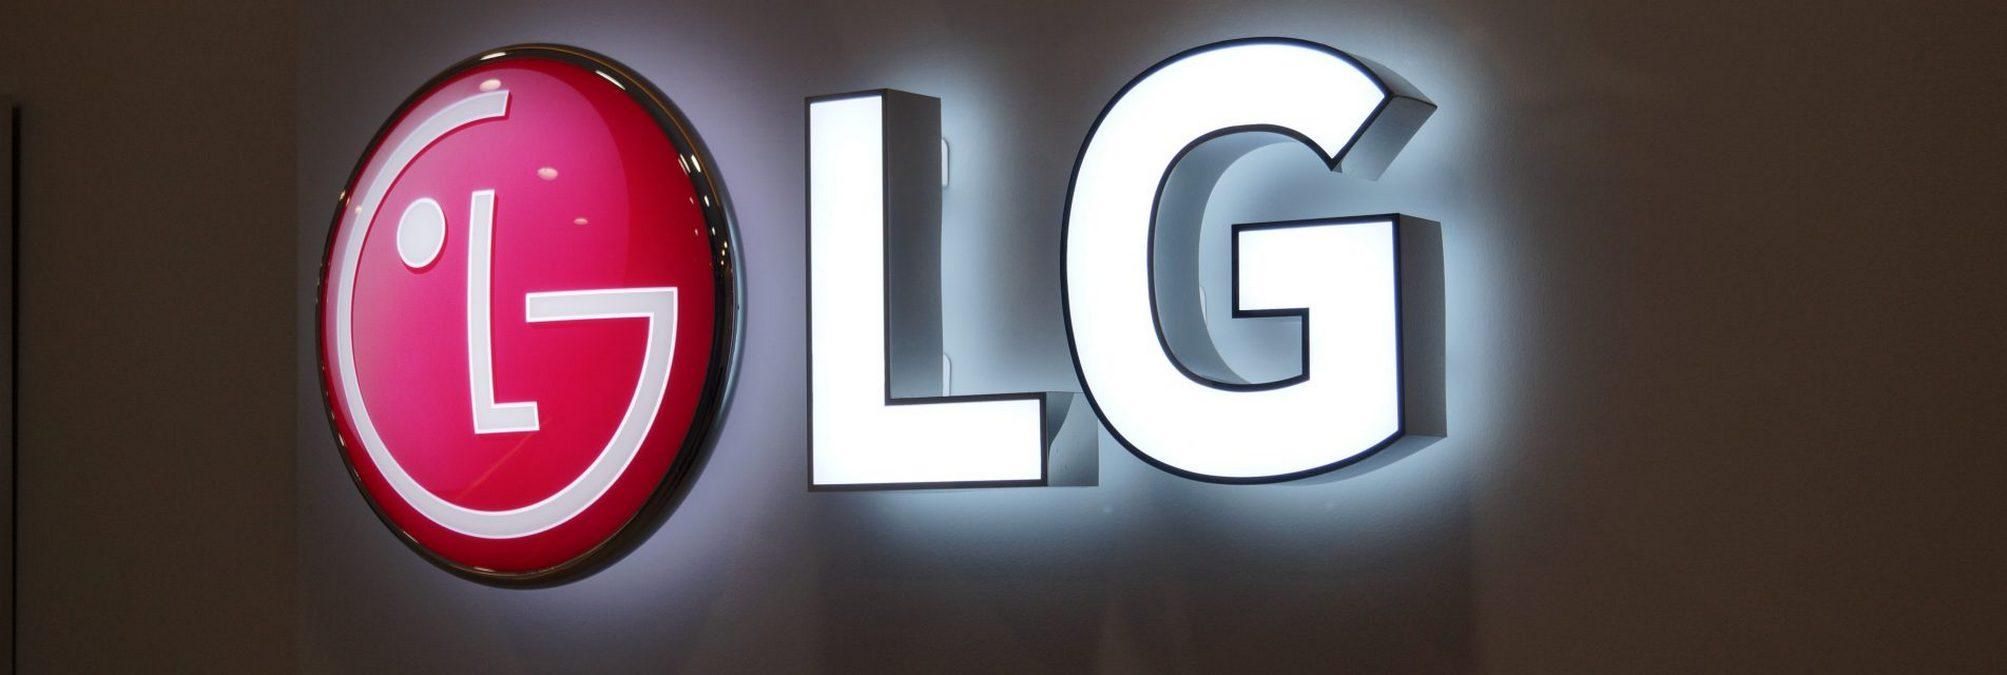 Новый смартфон от LG может растягиваться: его показали на рендерах